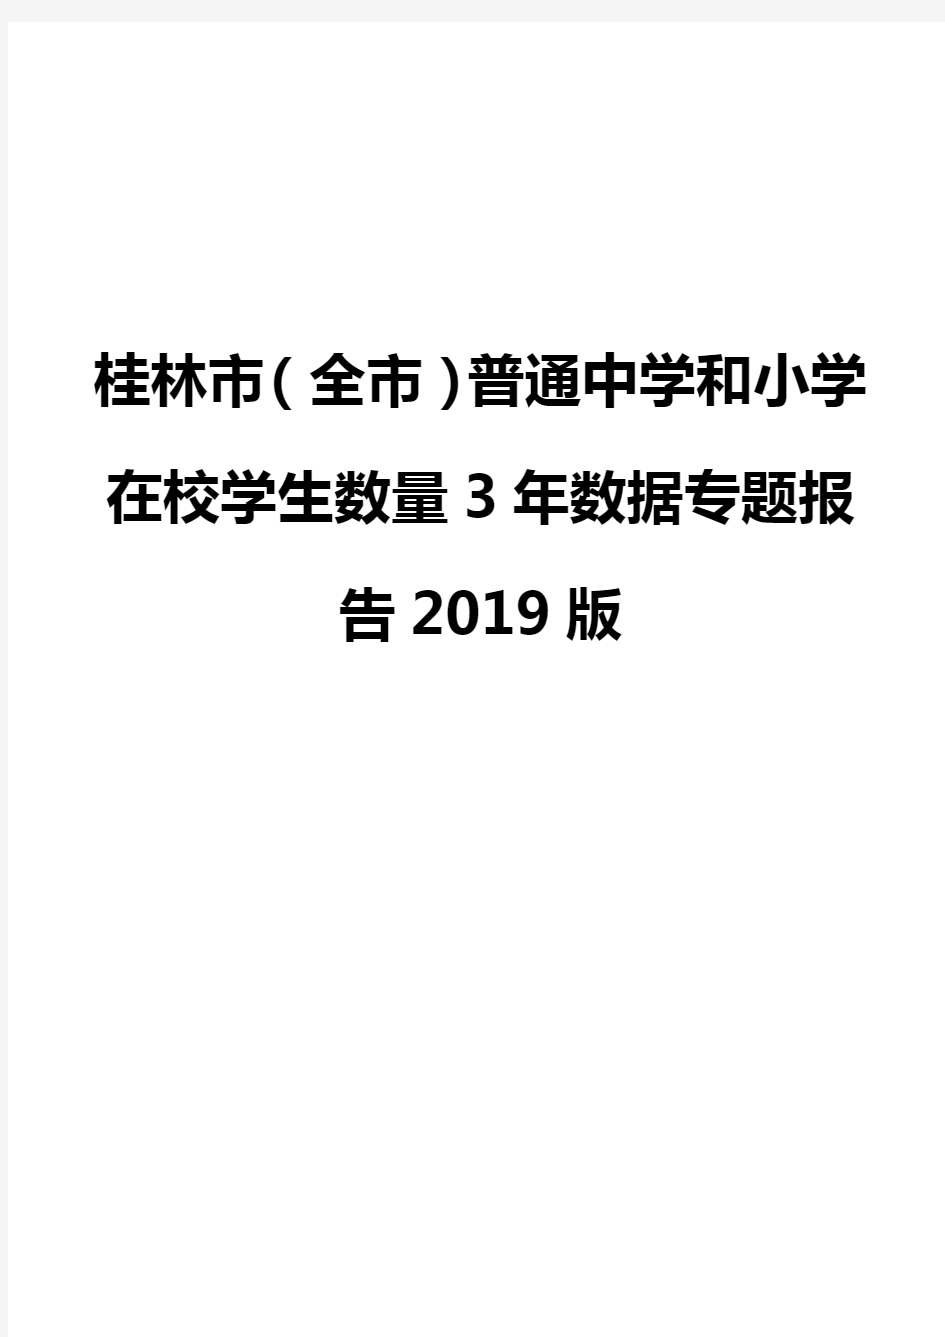 桂林市(全市)普通中学和小学在校学生数量3年数据专题报告2019版